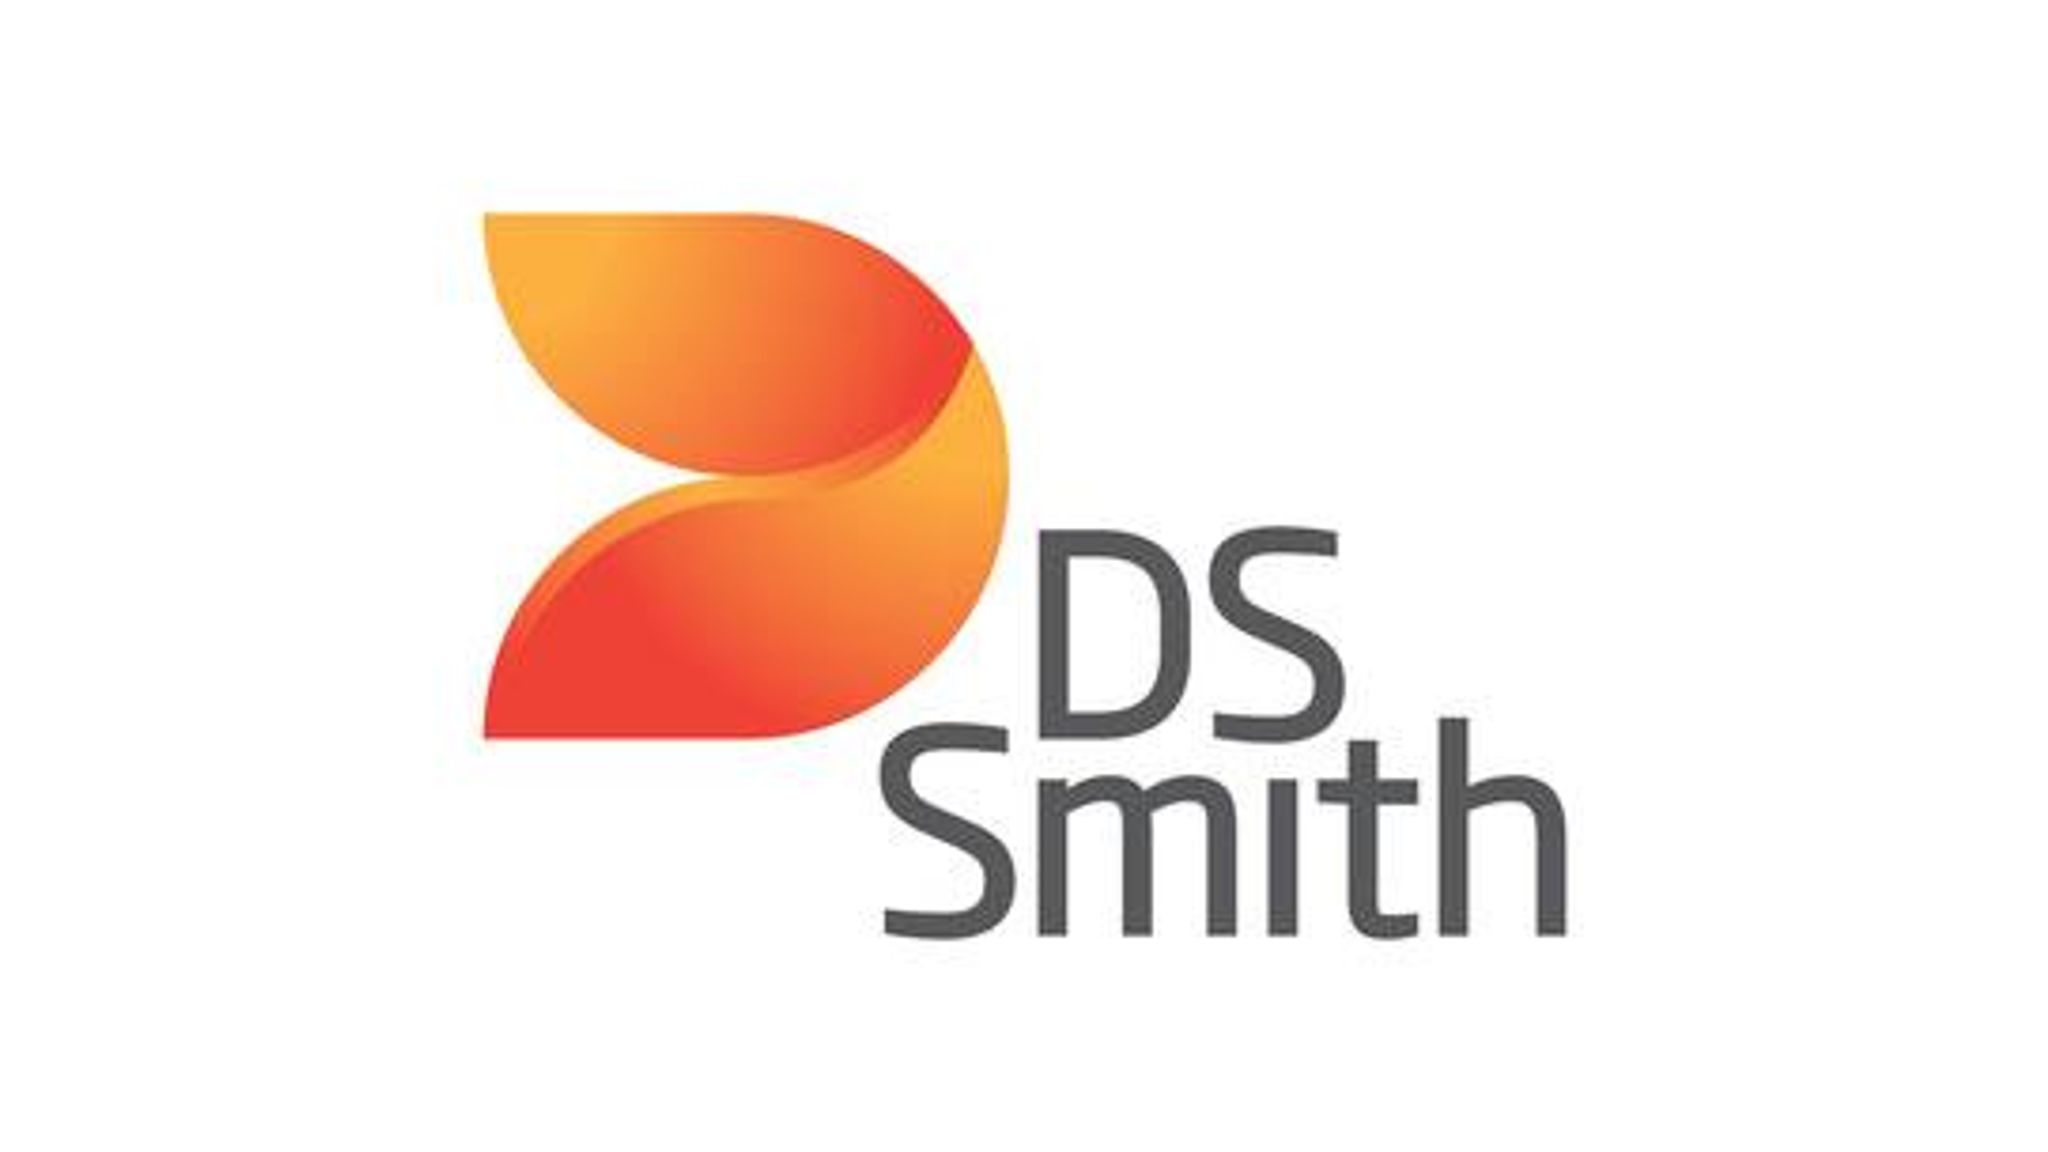 image smith logo